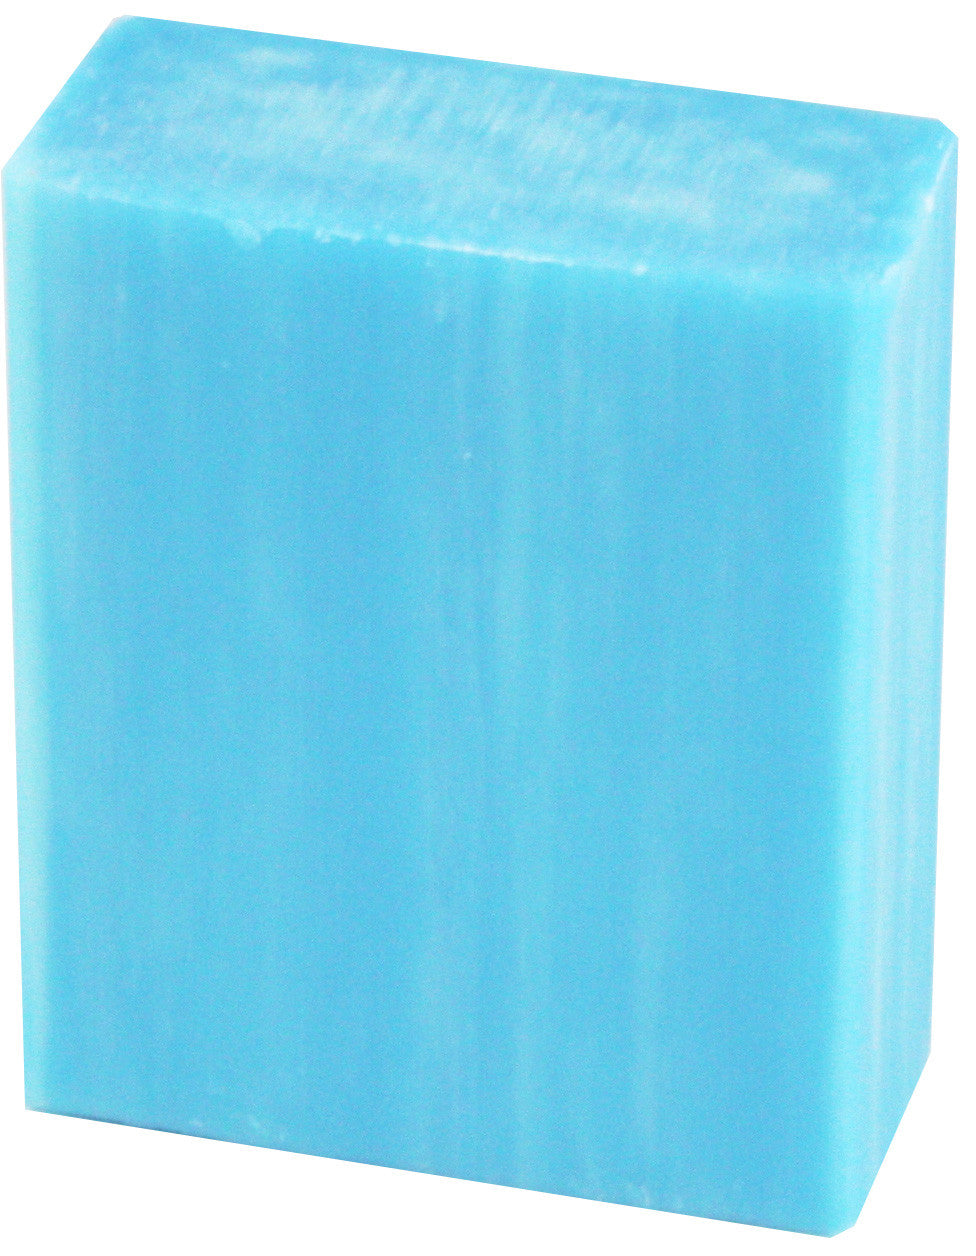 Ocean beach soap bar